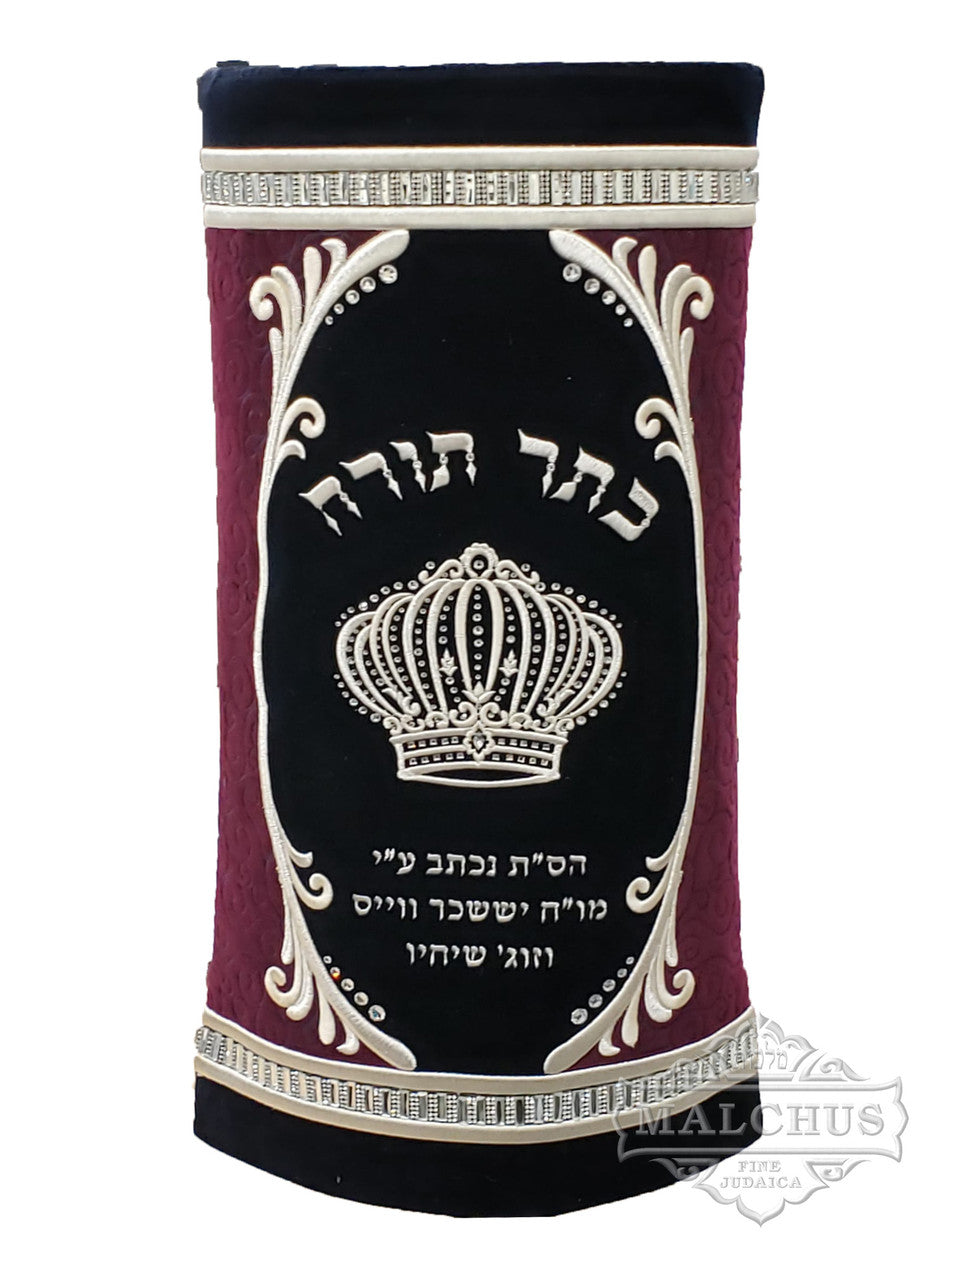 Sefer Torah Mantel #16-1